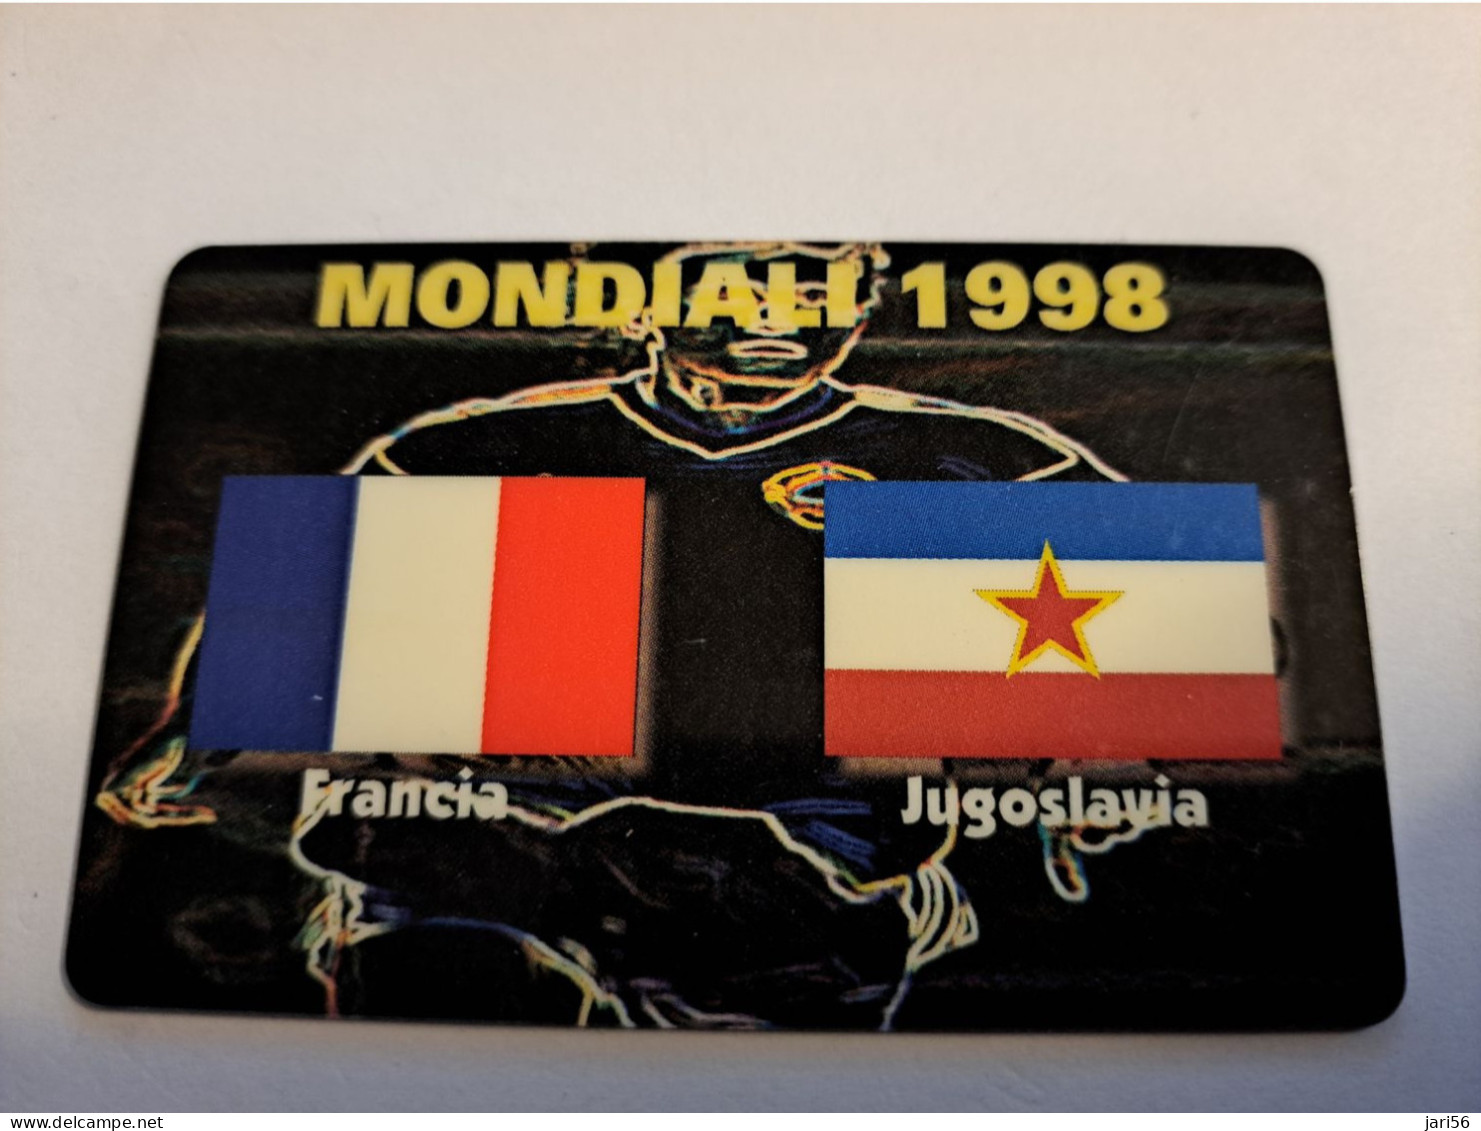 ITALIA/ITALY  PREPAID/ MONDIALI 1998 / FLAGS/ FRANCE / JUGOSLAVIA  MINT      **16069** - Colecciones'